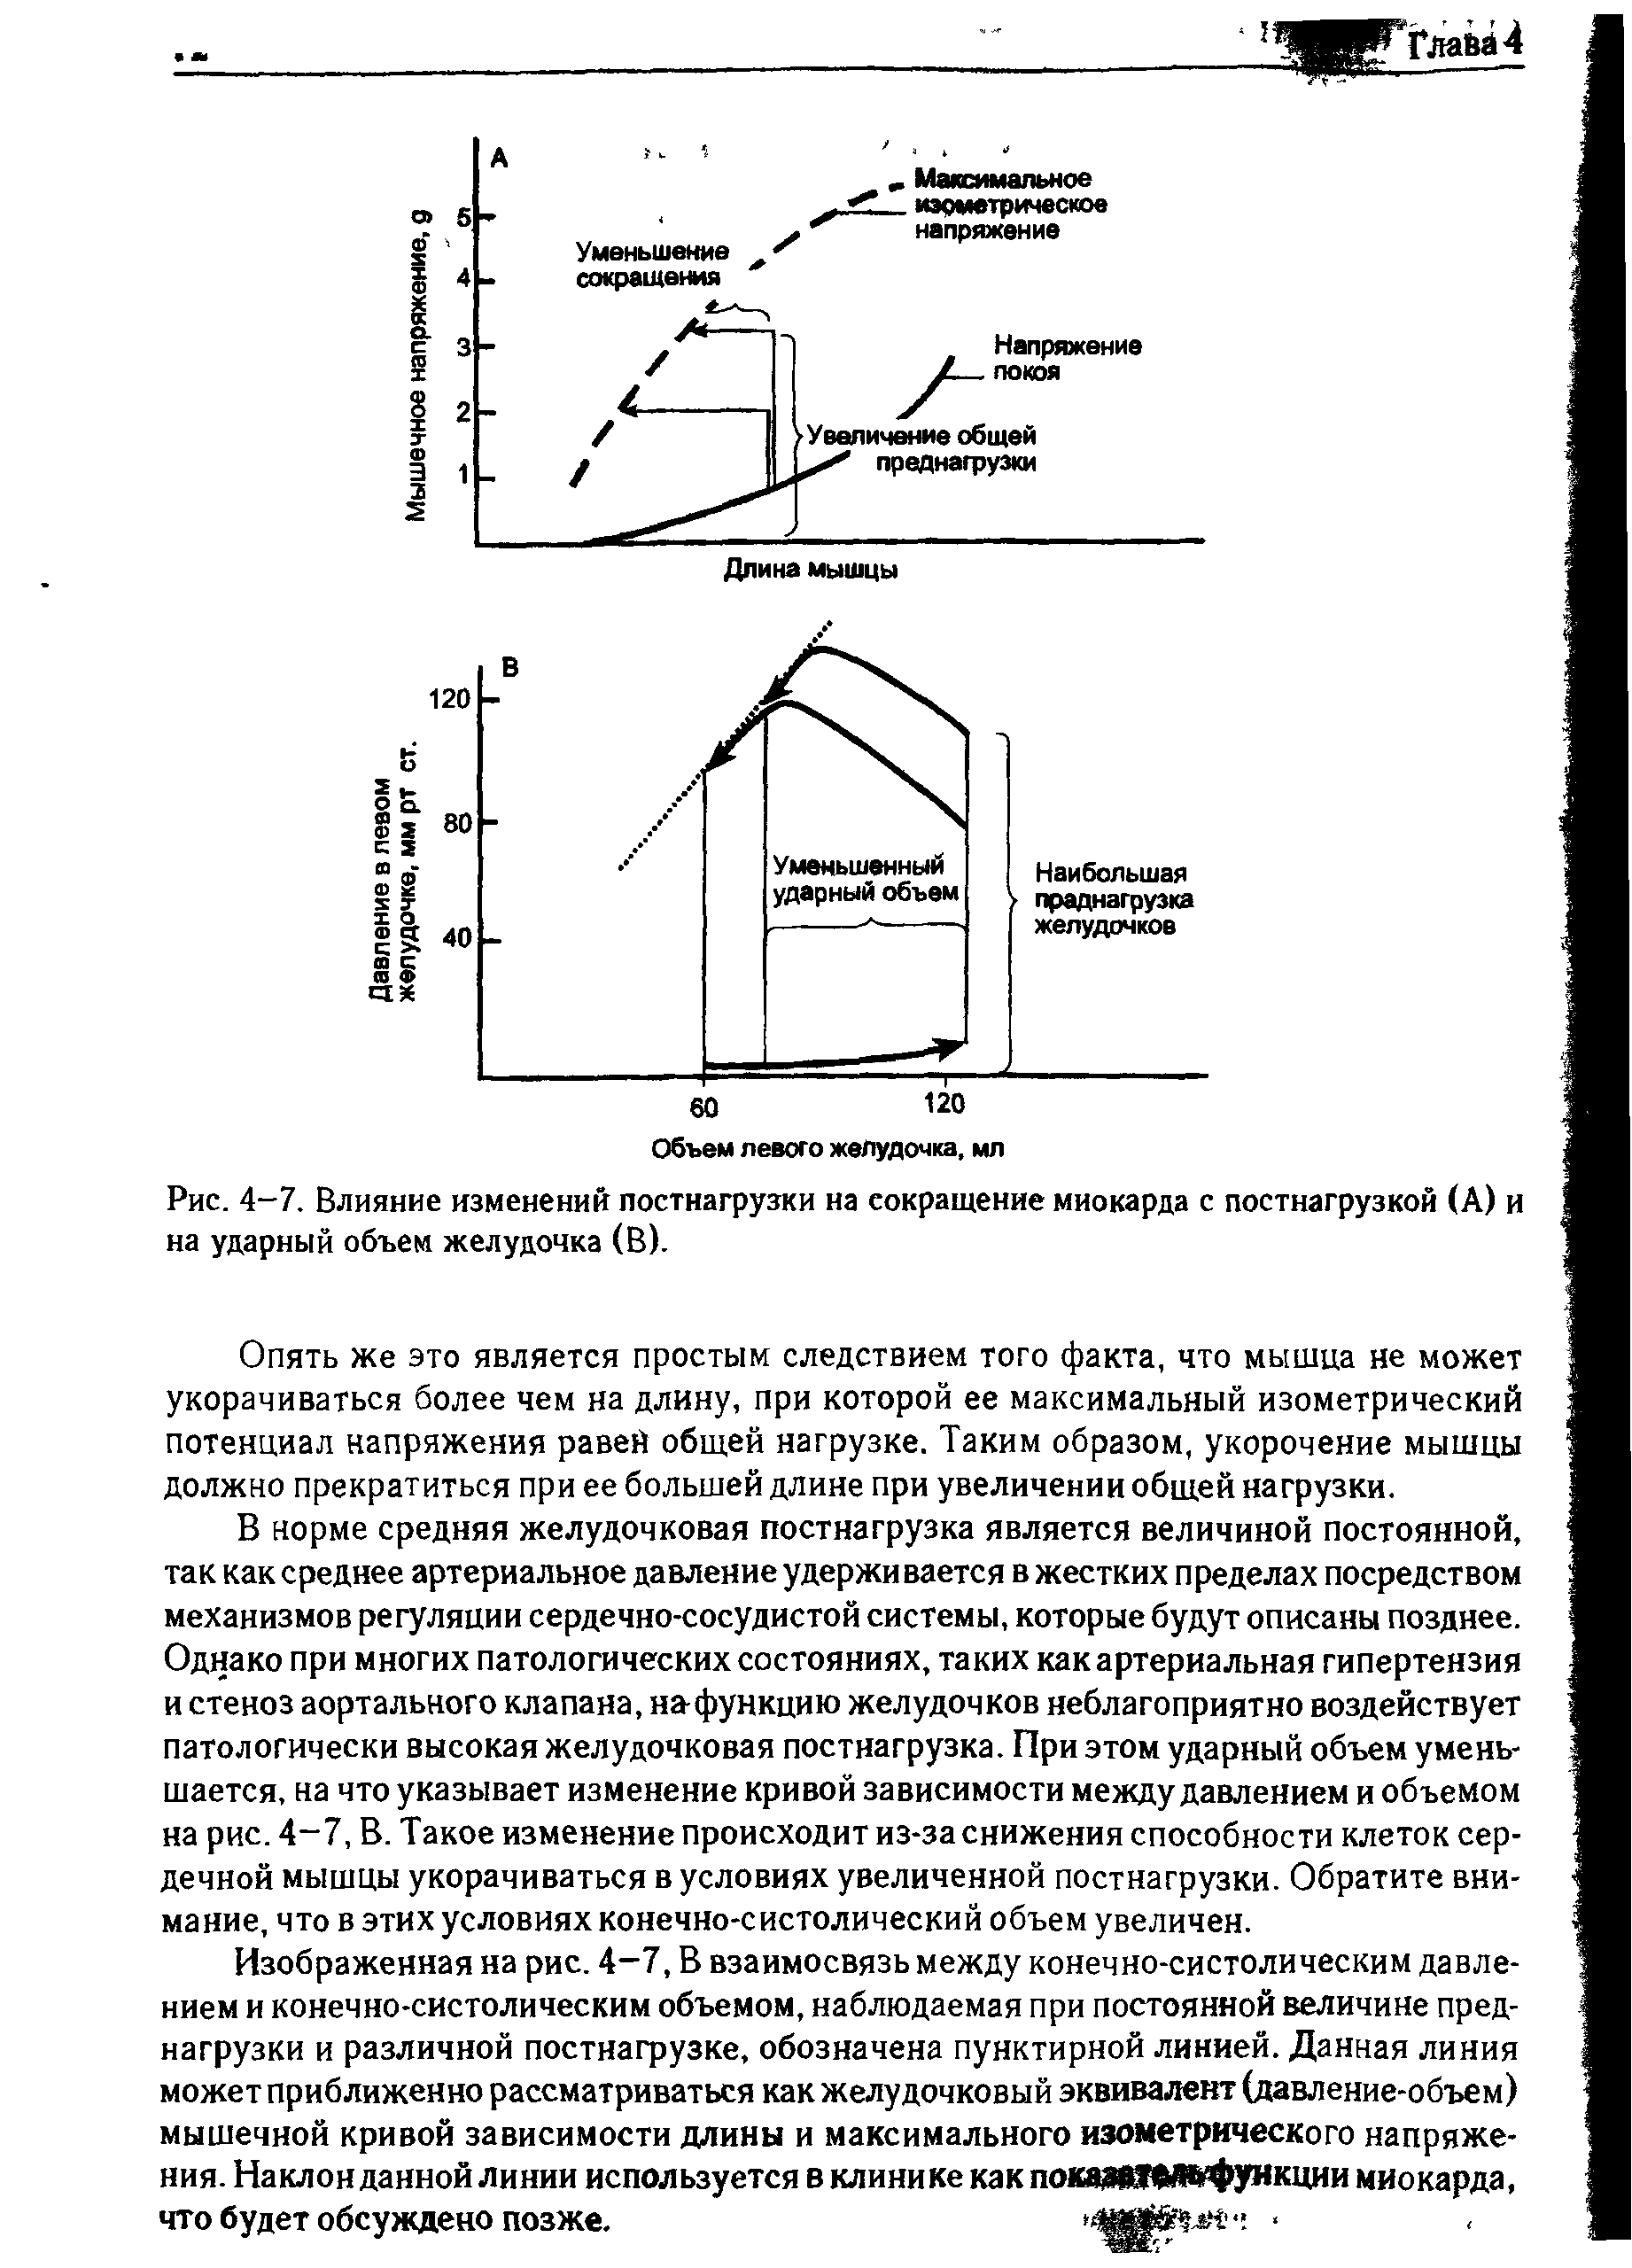 Рис. 4-7. Влияние изменений постнагрузки на сокращение миокарда с постнагрузкой (А) и на ударный объем желудочка (В).